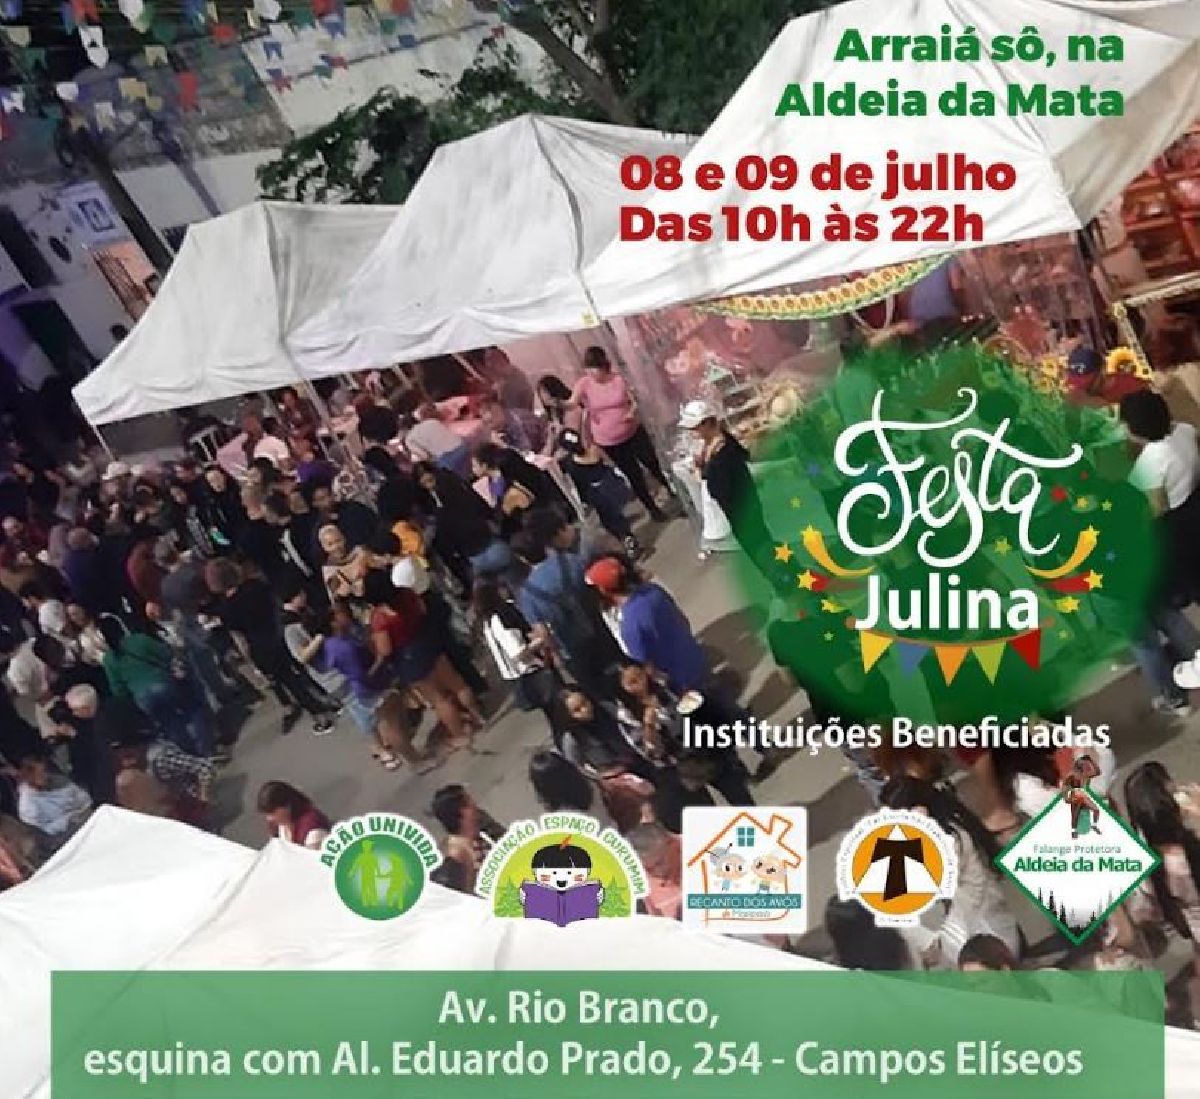 Festa julina Arraiá da Aldeia será nos dias 8 e 9 de julho 